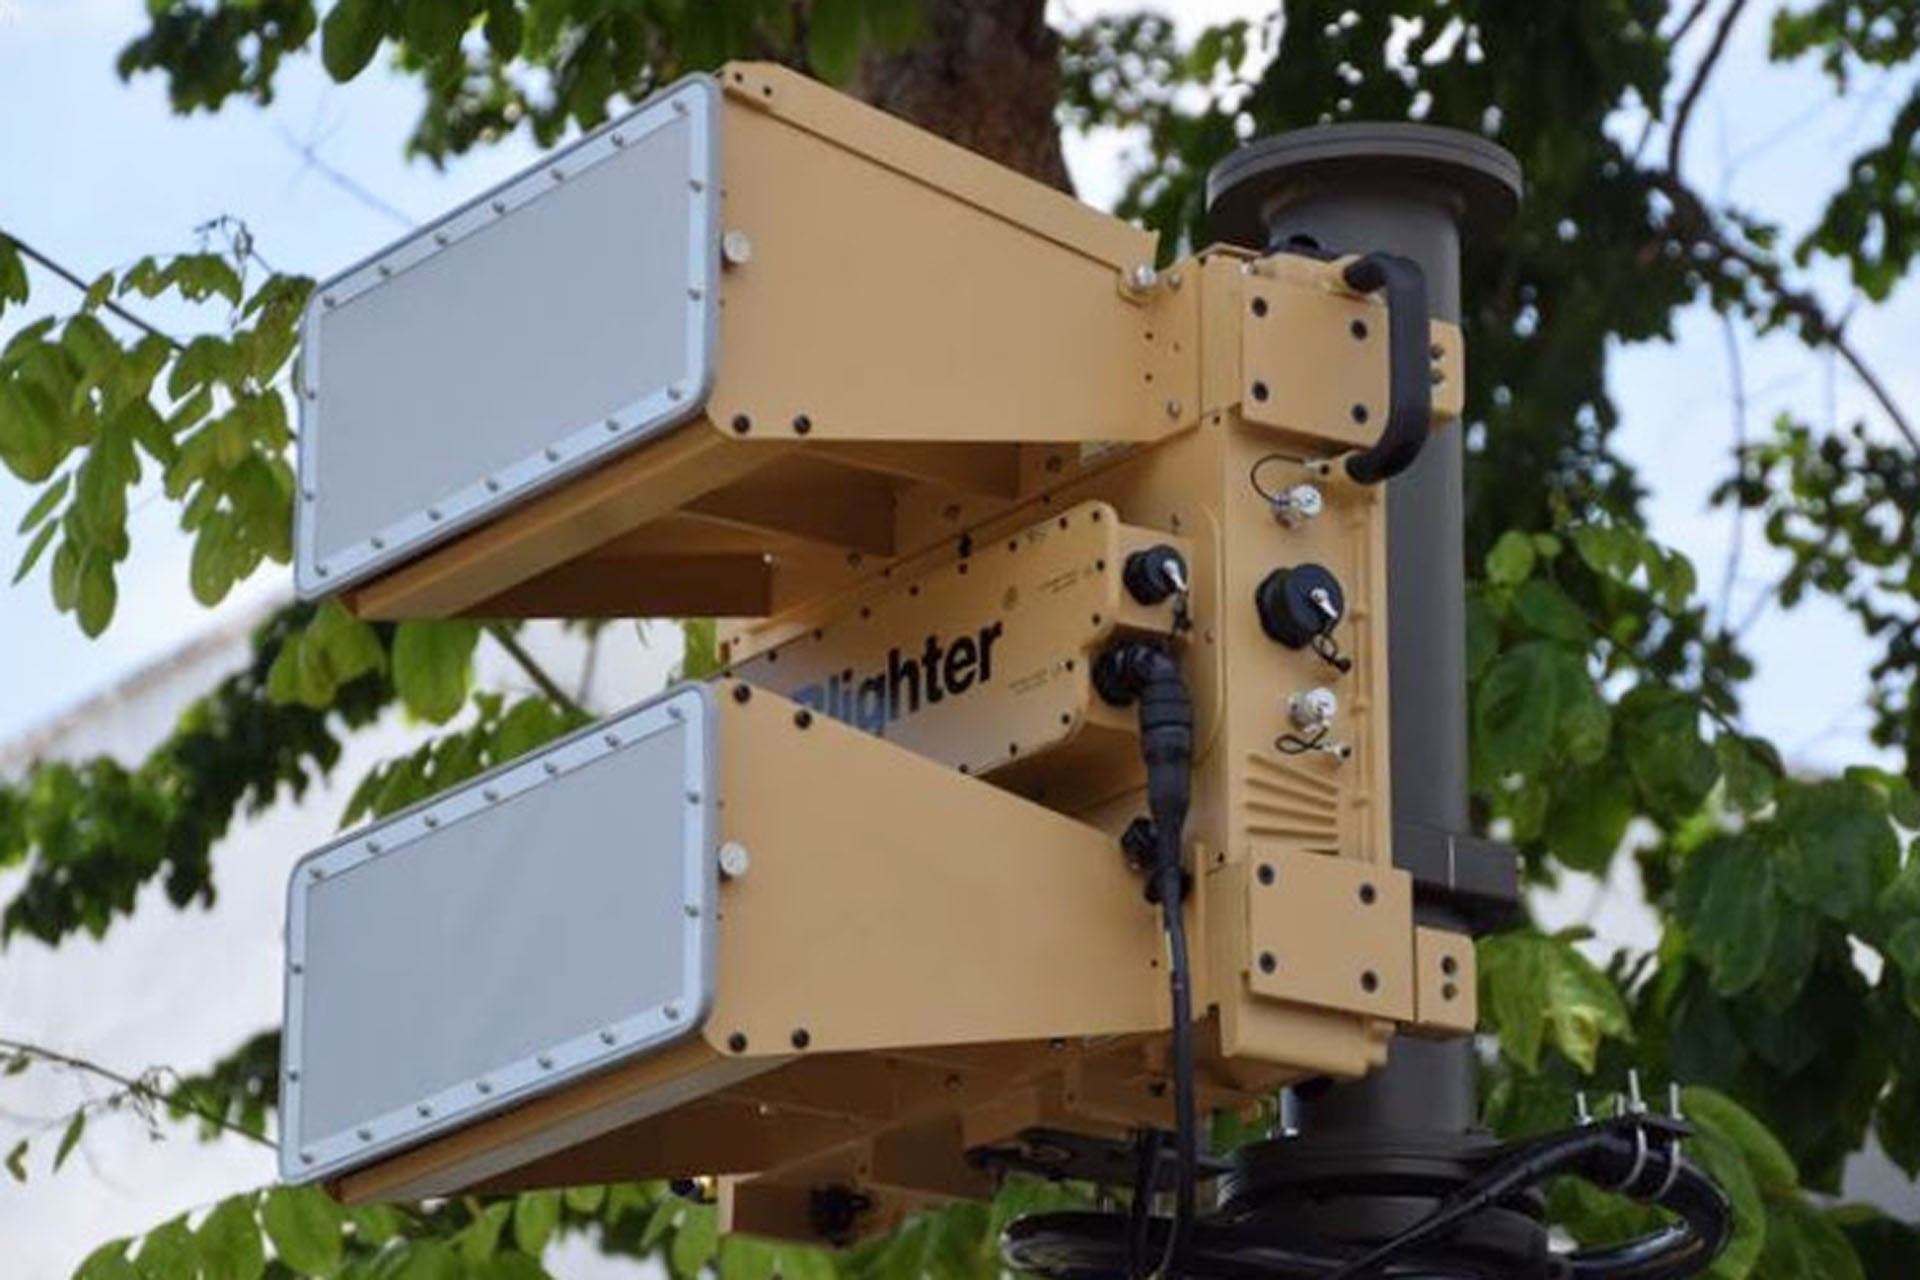 B400 Series Ground Surveillance Radars - Blighter